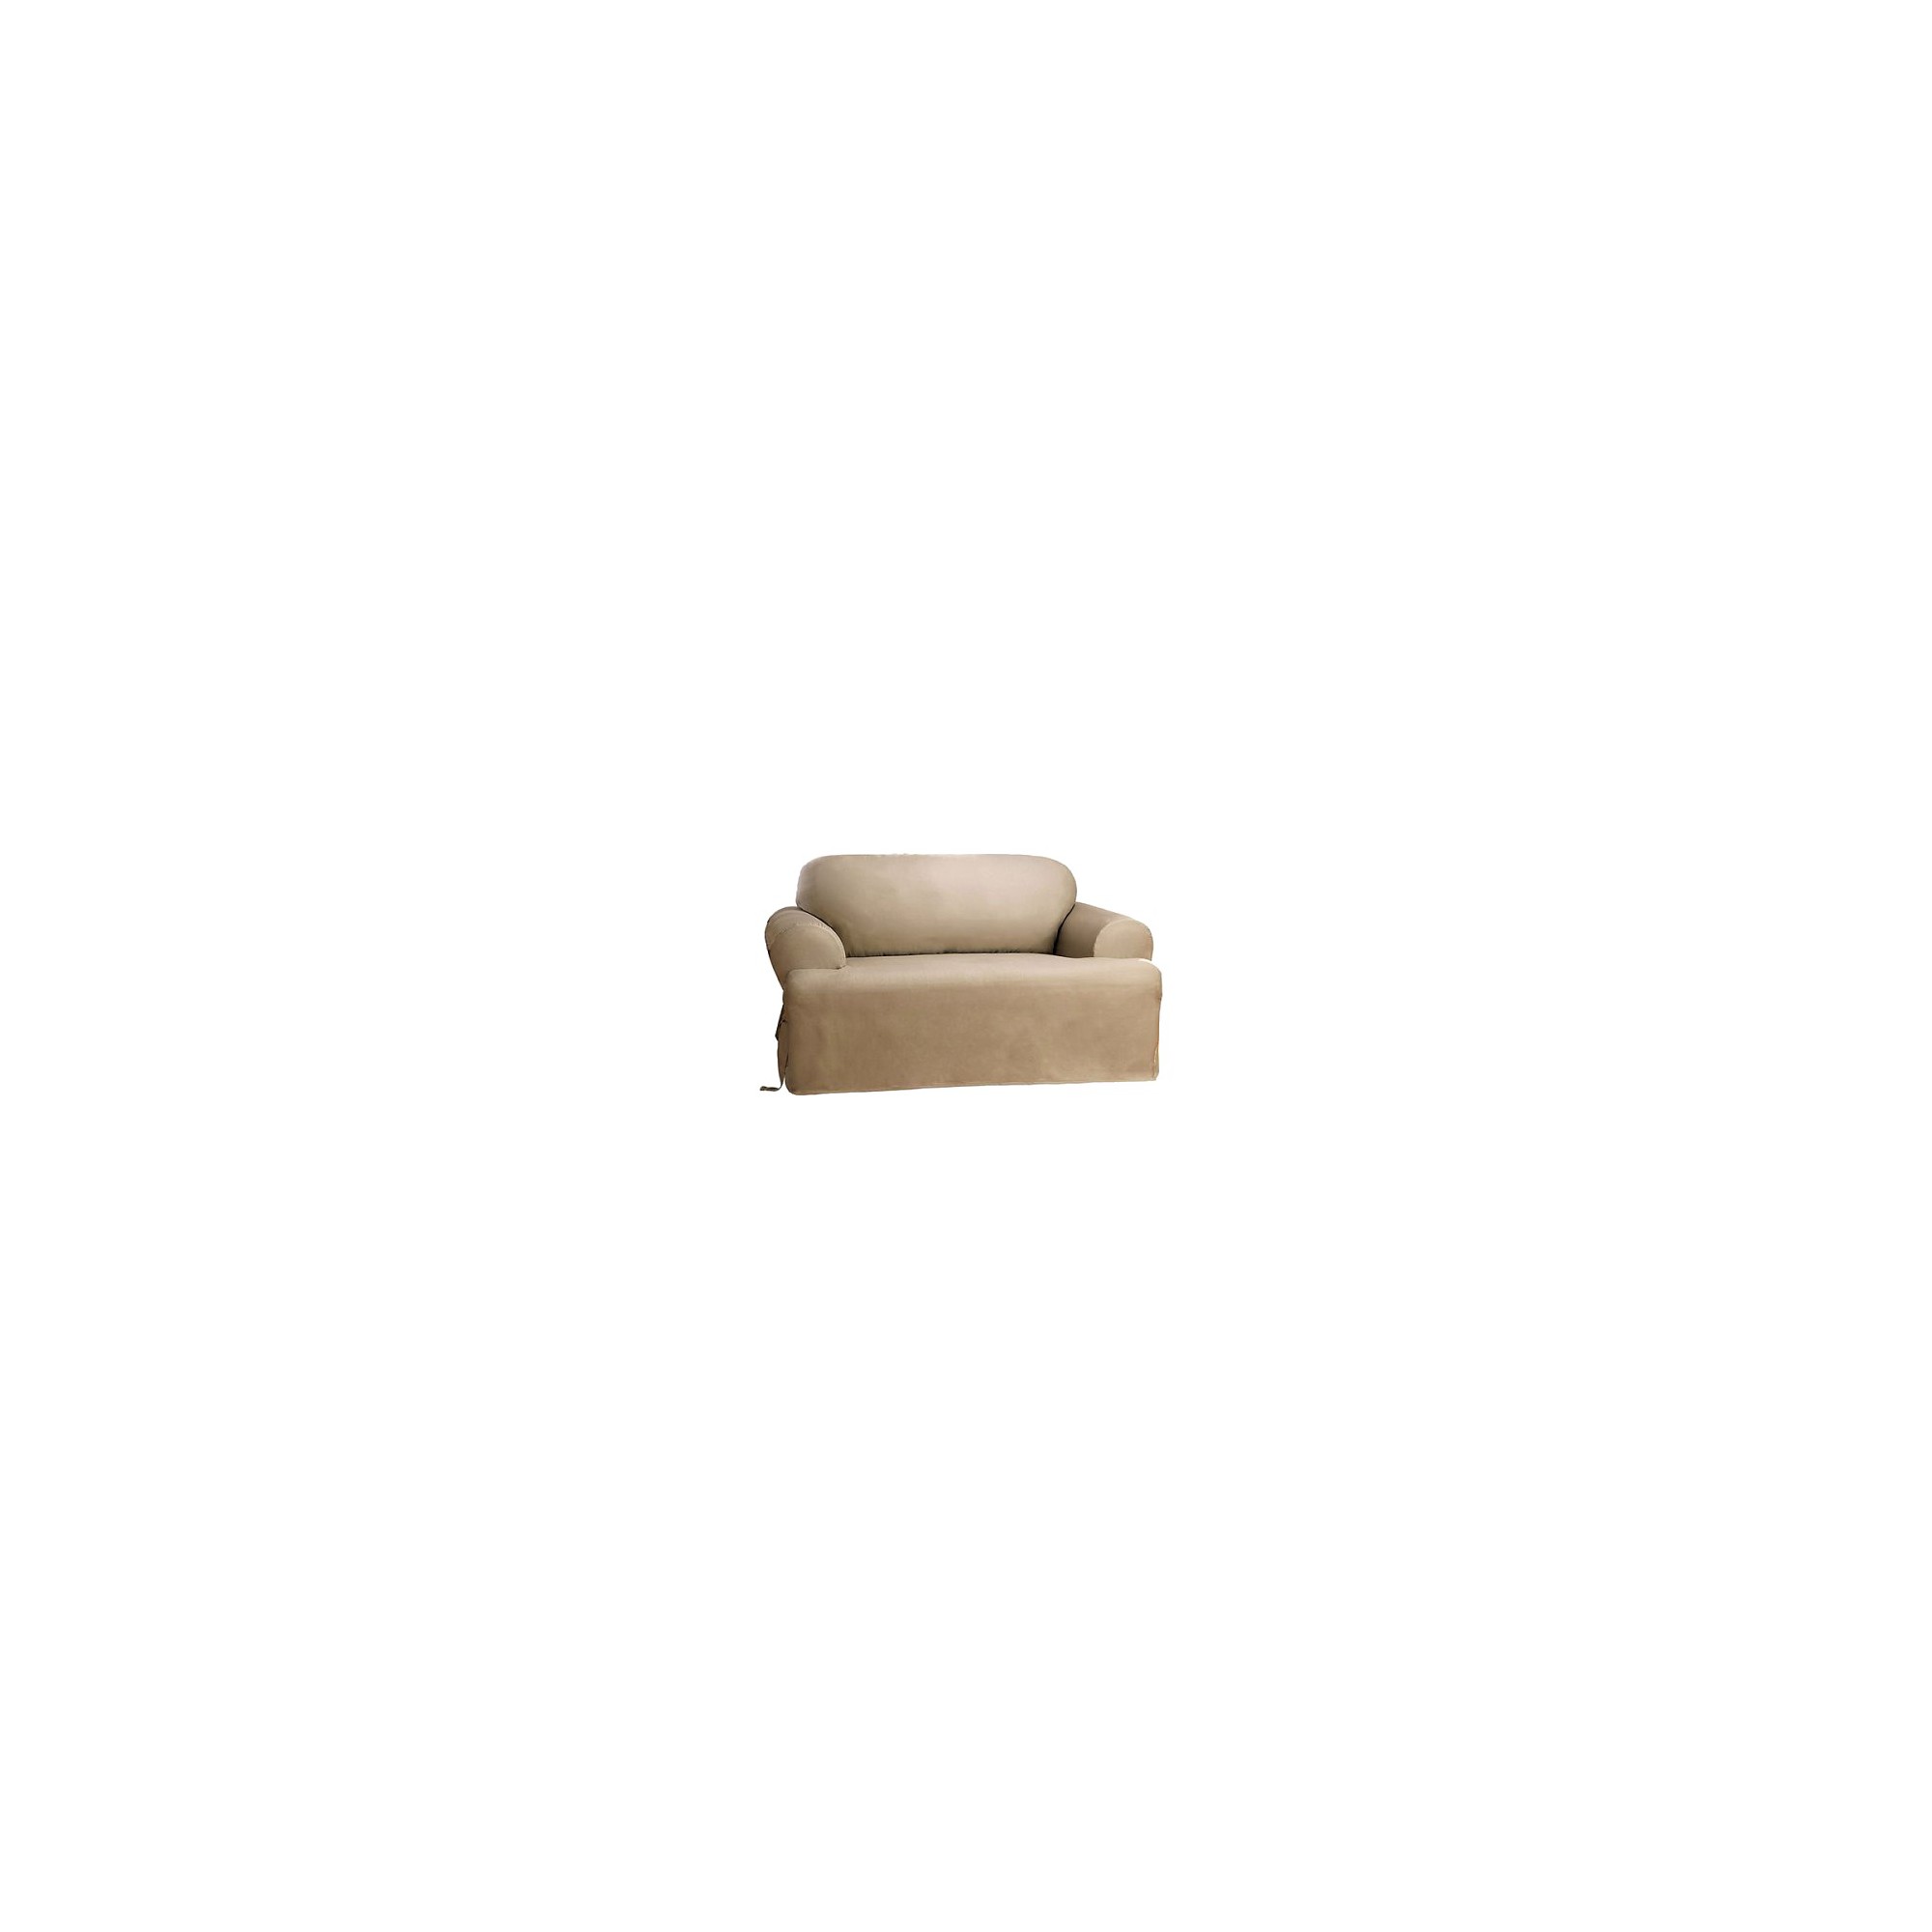 Cotton Duck Tcushion Sofa Slipcover Linen - Sure Fit